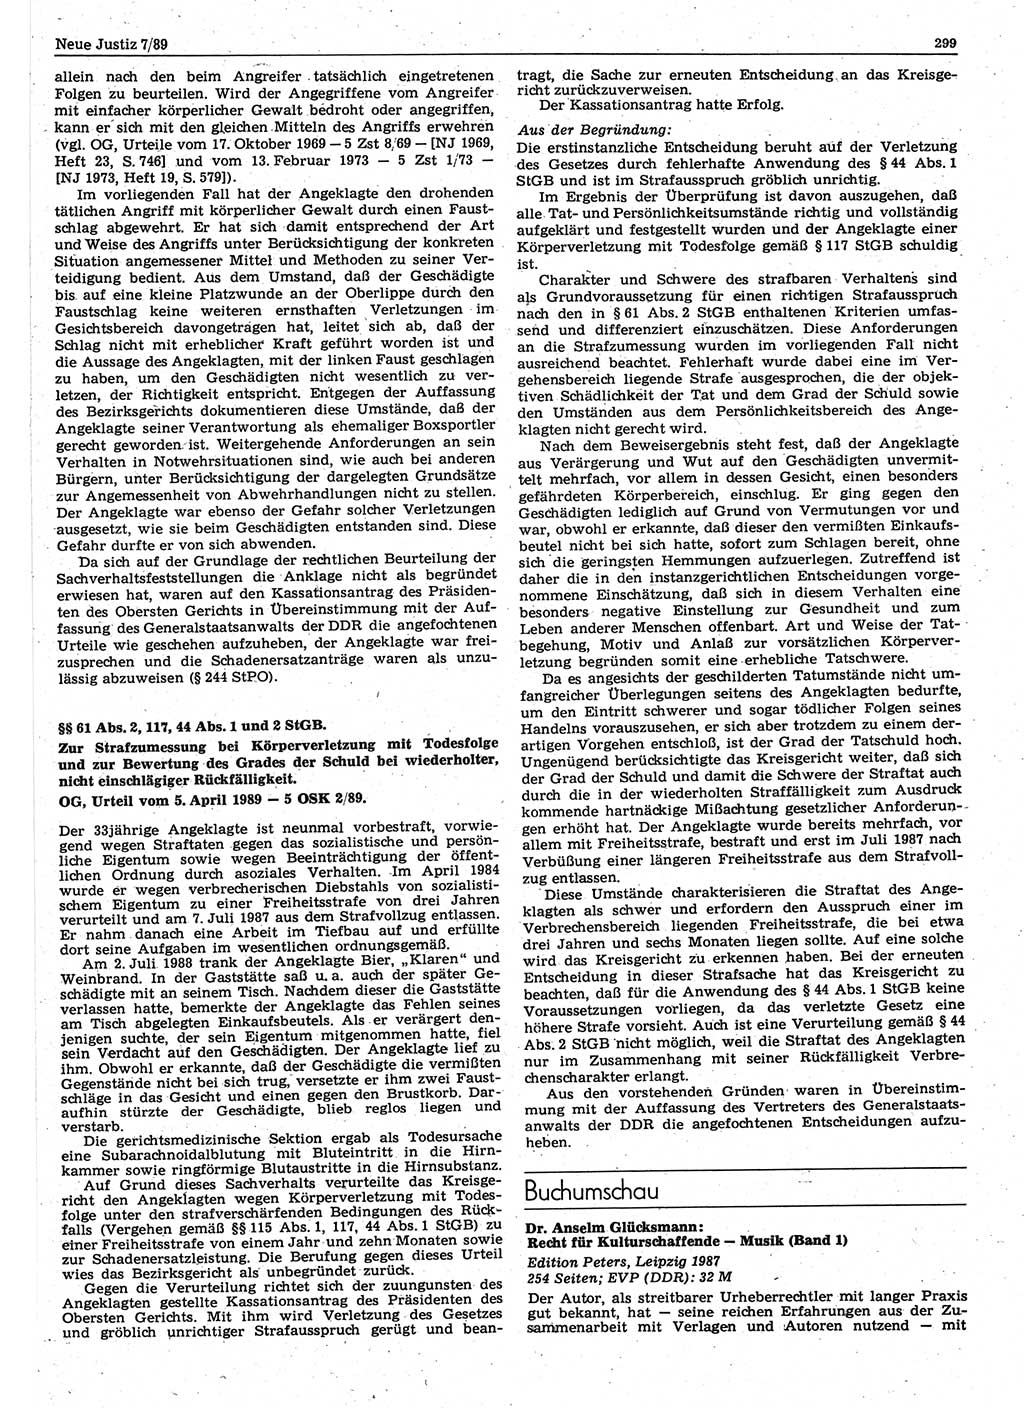 Neue Justiz (NJ), Zeitschrift für sozialistisches Recht und Gesetzlichkeit [Deutsche Demokratische Republik (DDR)], 43. Jahrgang 1989, Seite 299 (NJ DDR 1989, S. 299)